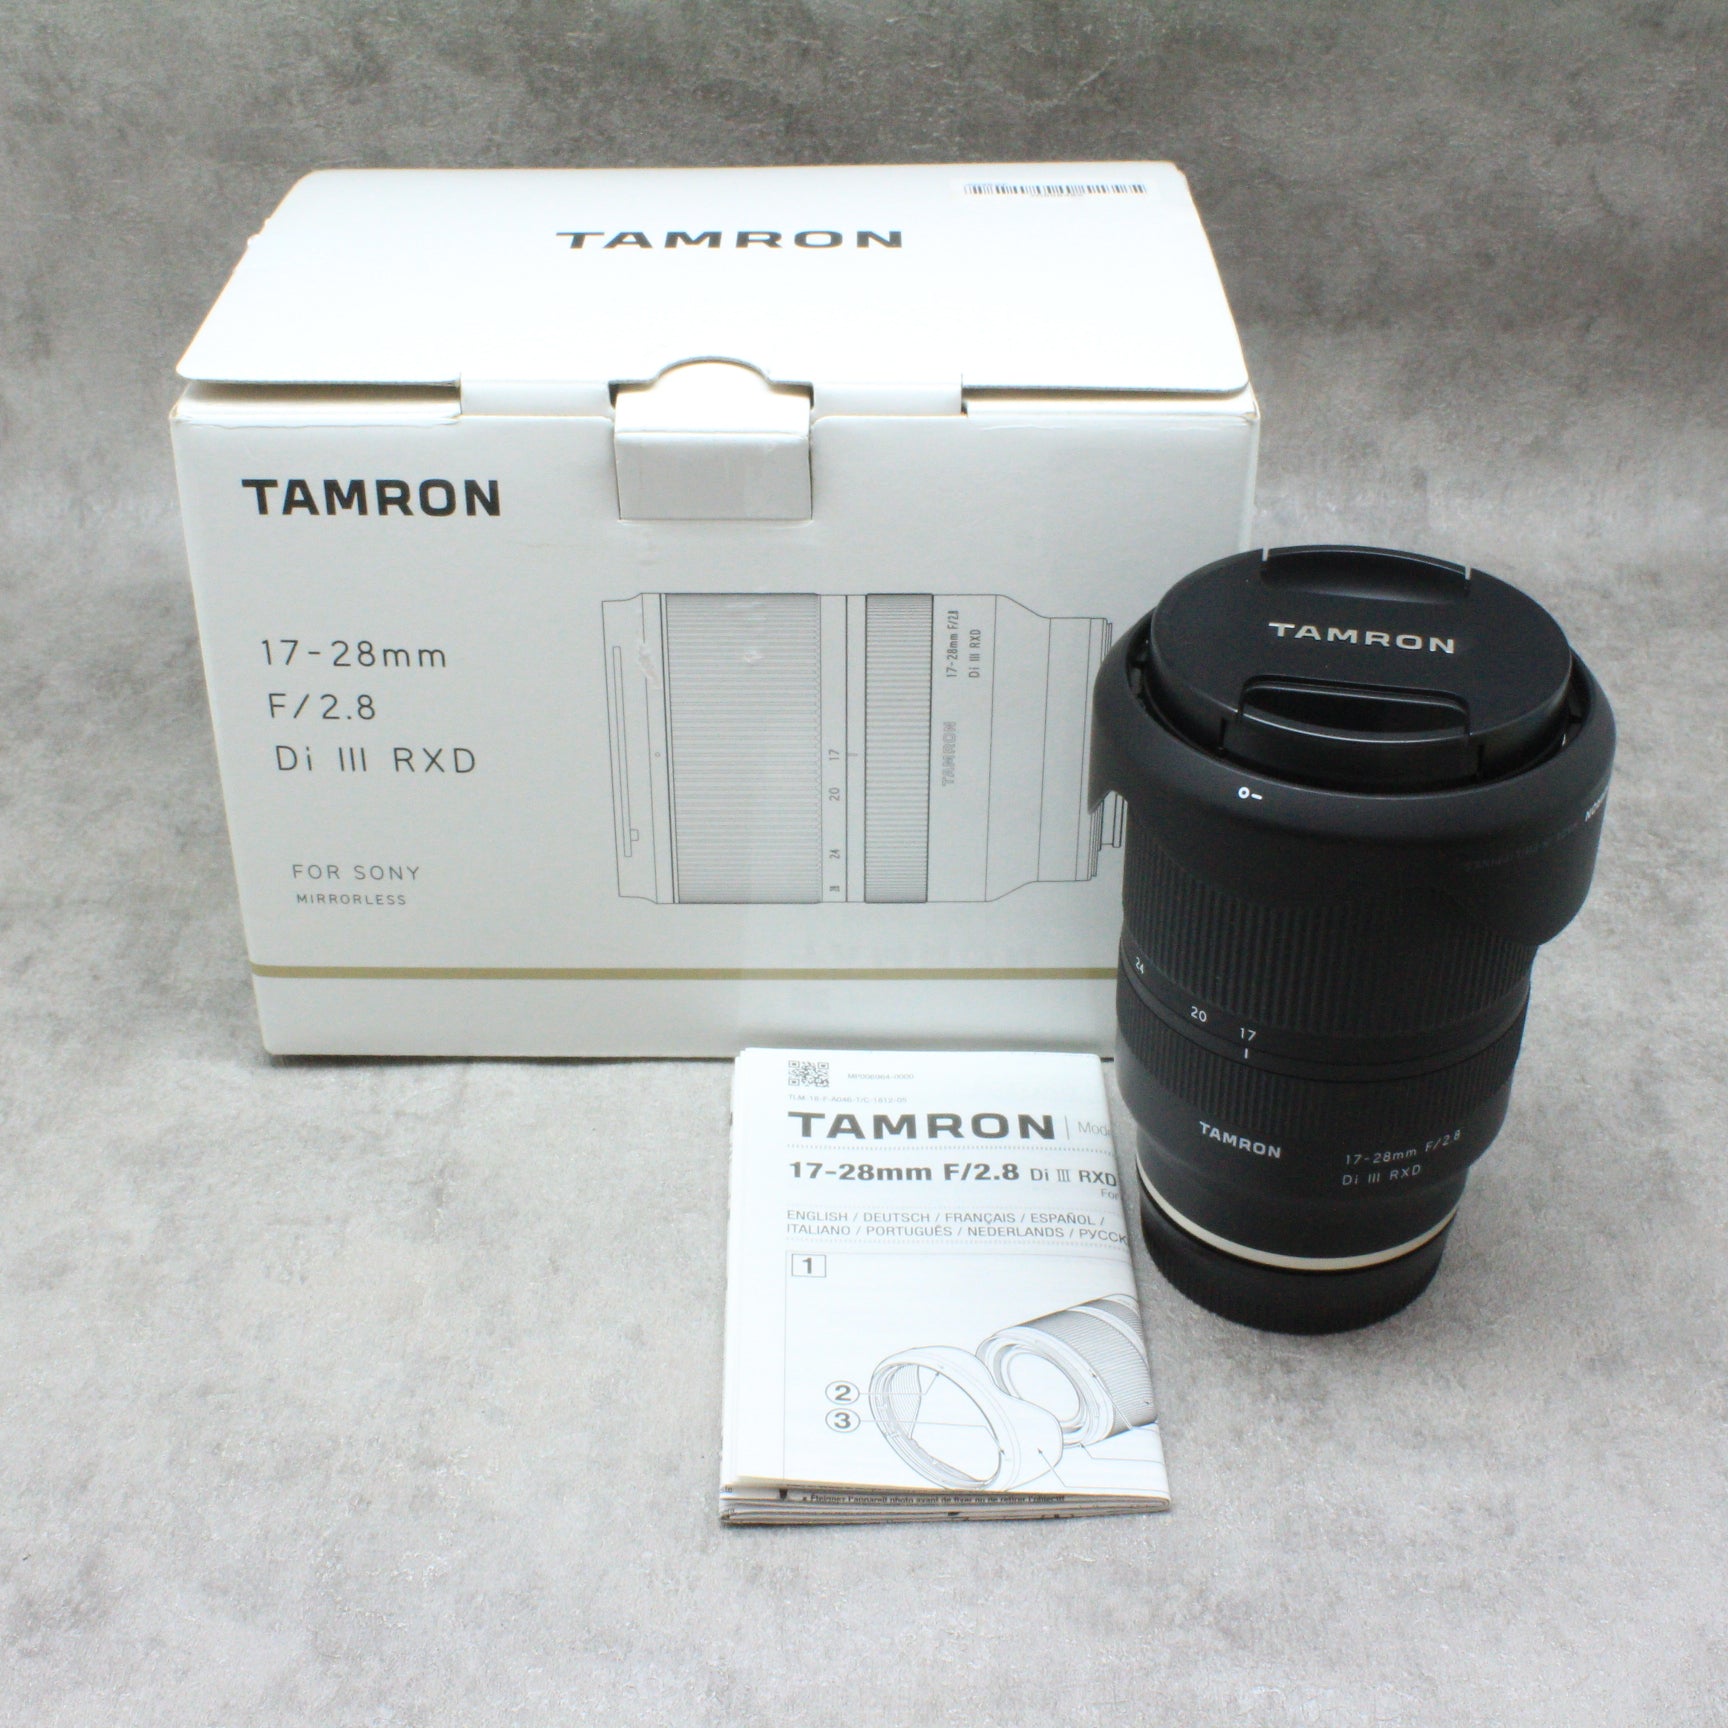 Tamron 17-28mm F/2.8 Di III RXD (Model A046)